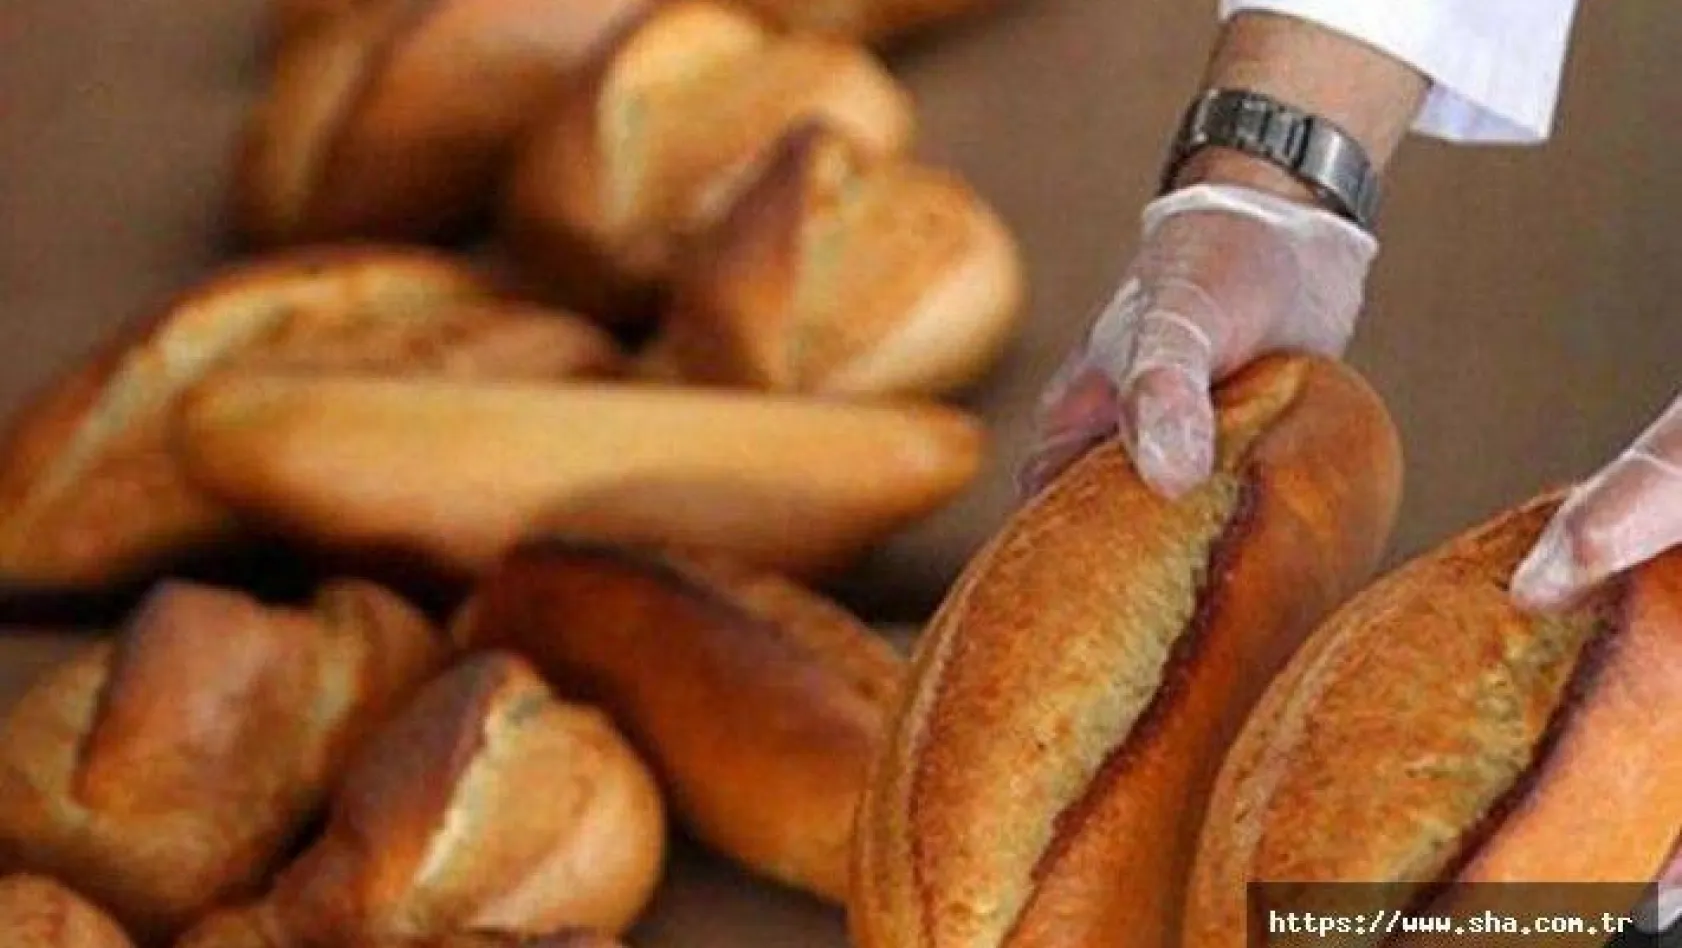 Silivri Belediyesi'nden 'Ambalajsız ekmek satışına' yasak gelecek mi ?